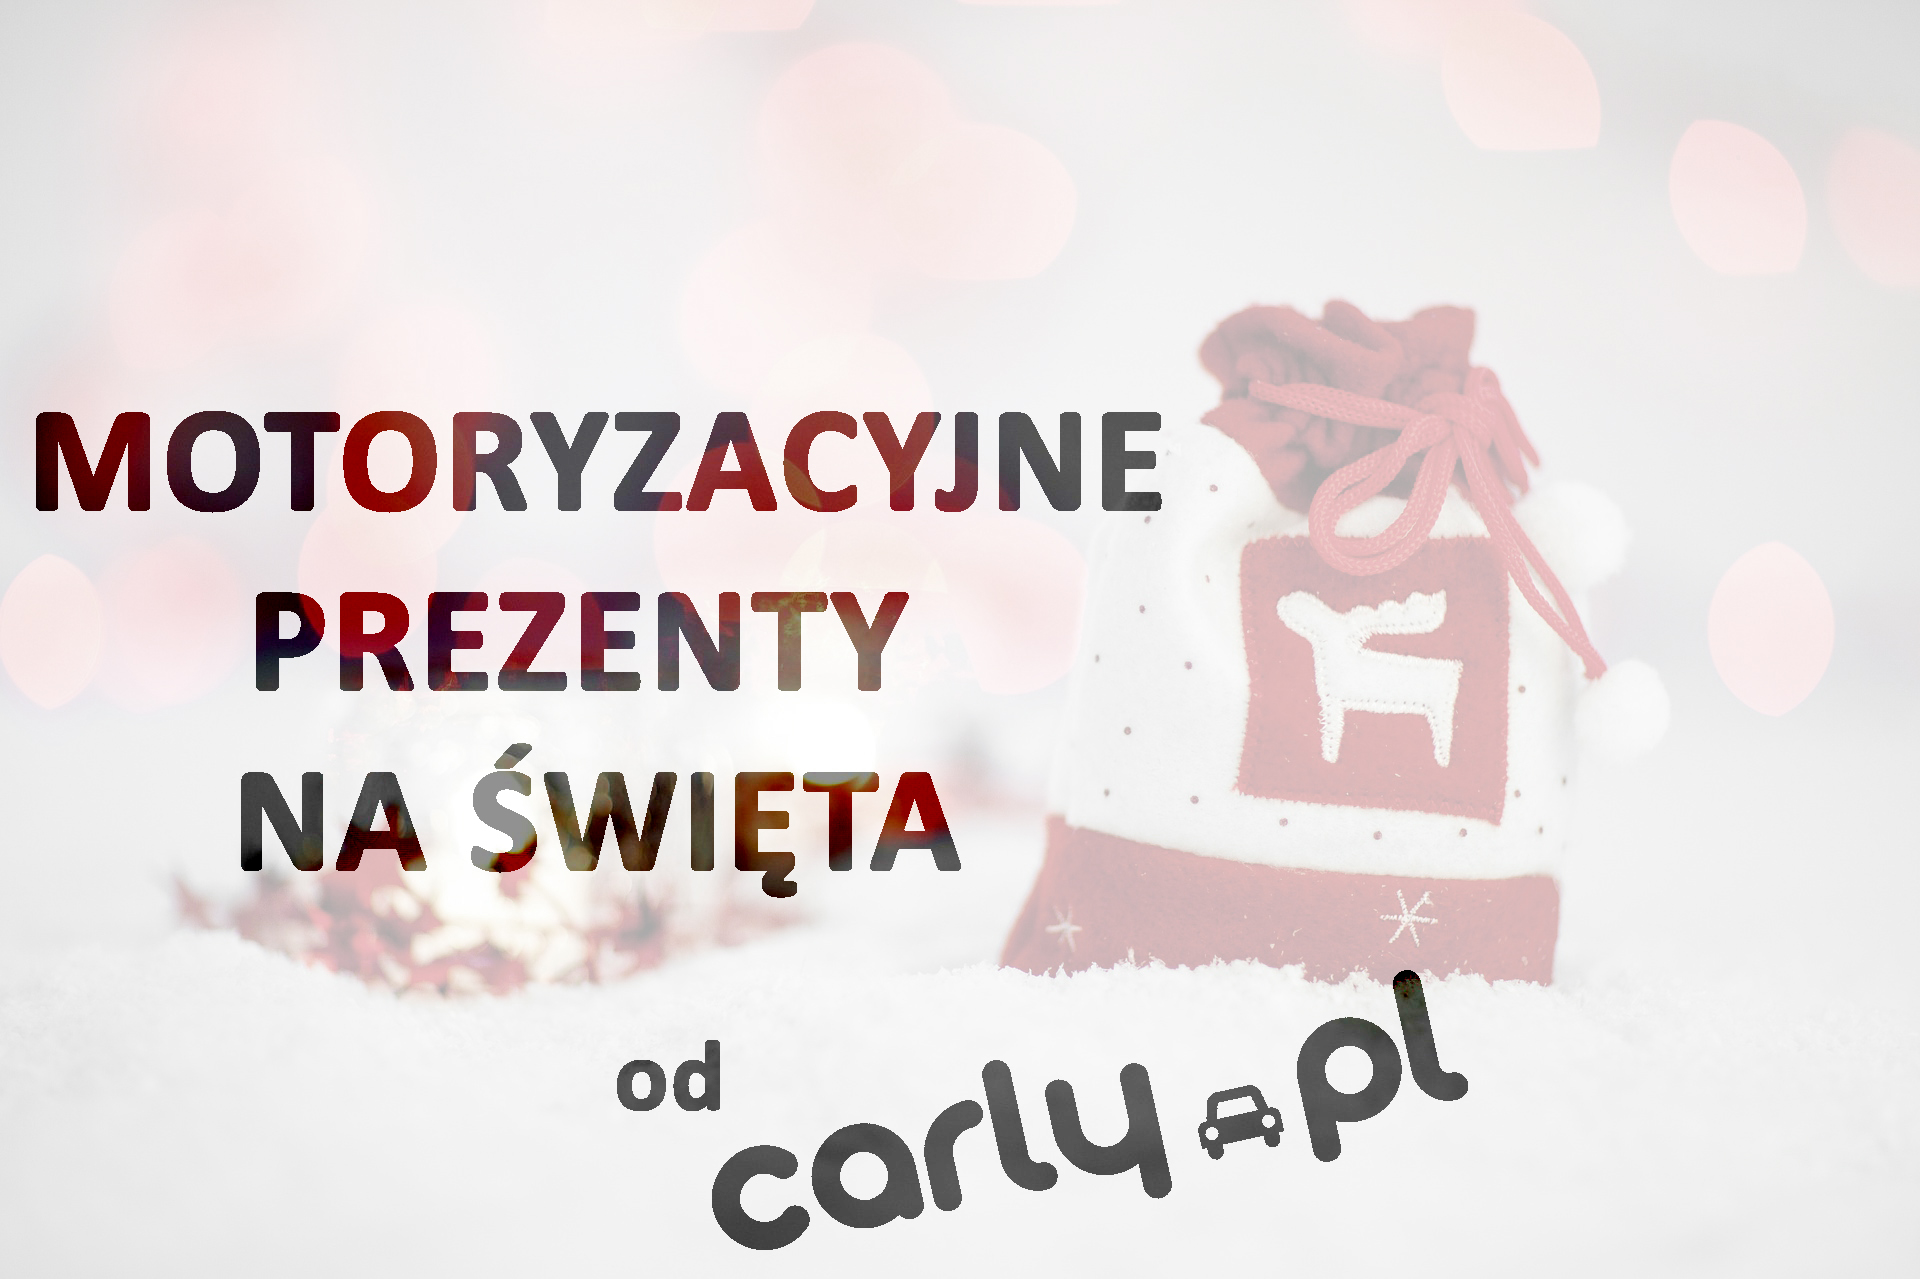 Pomysły na motoryzacyjny prezent świąteczny | Carly.pl